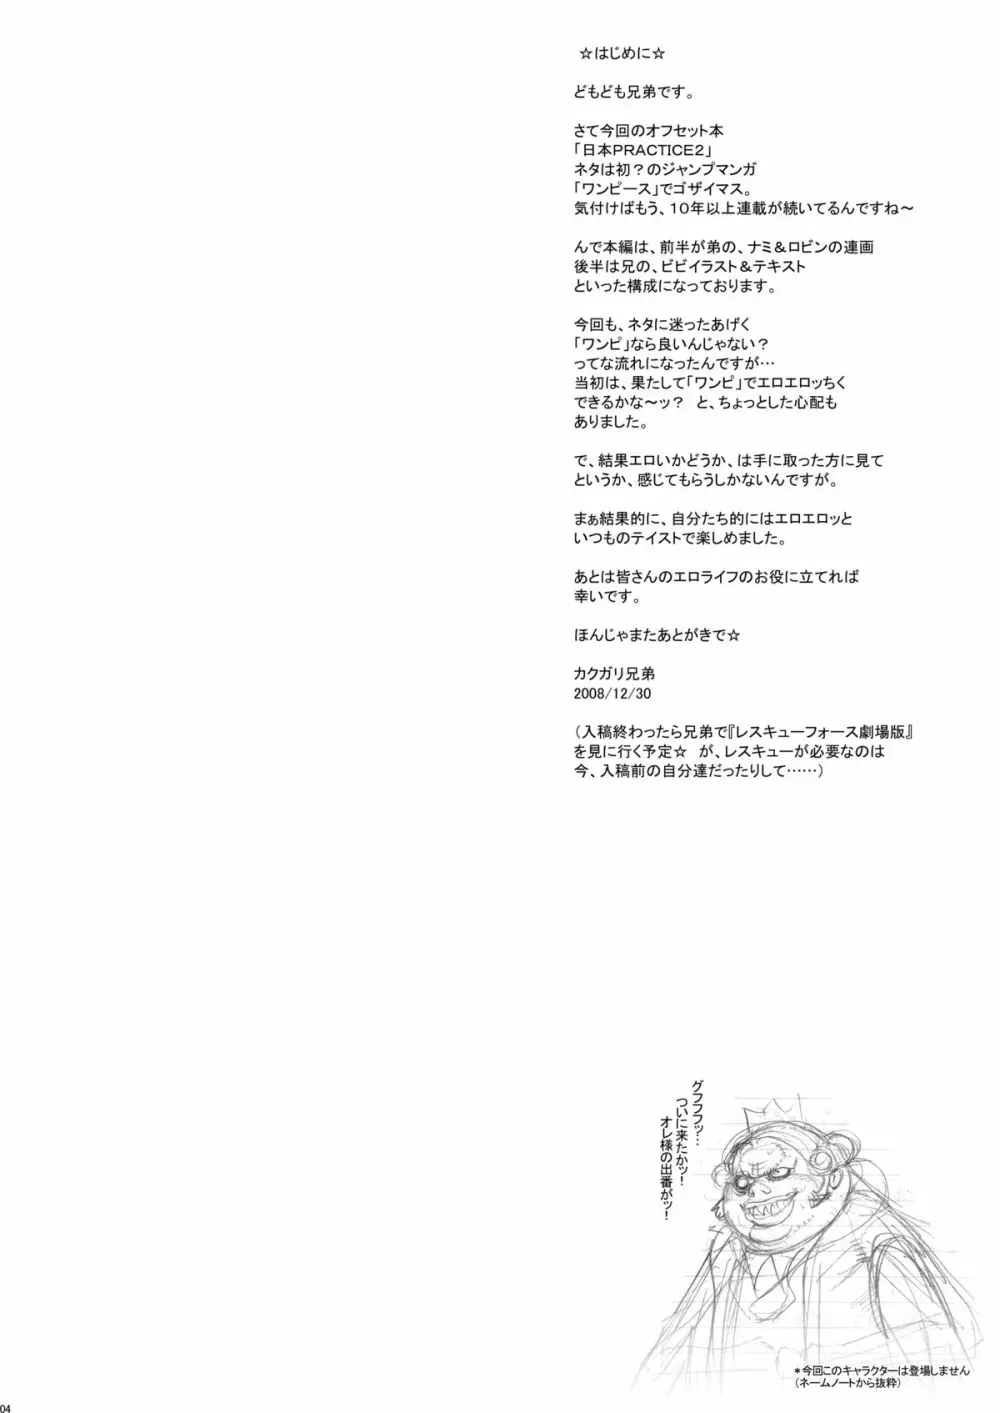 日本PRACTICE2 3ページ